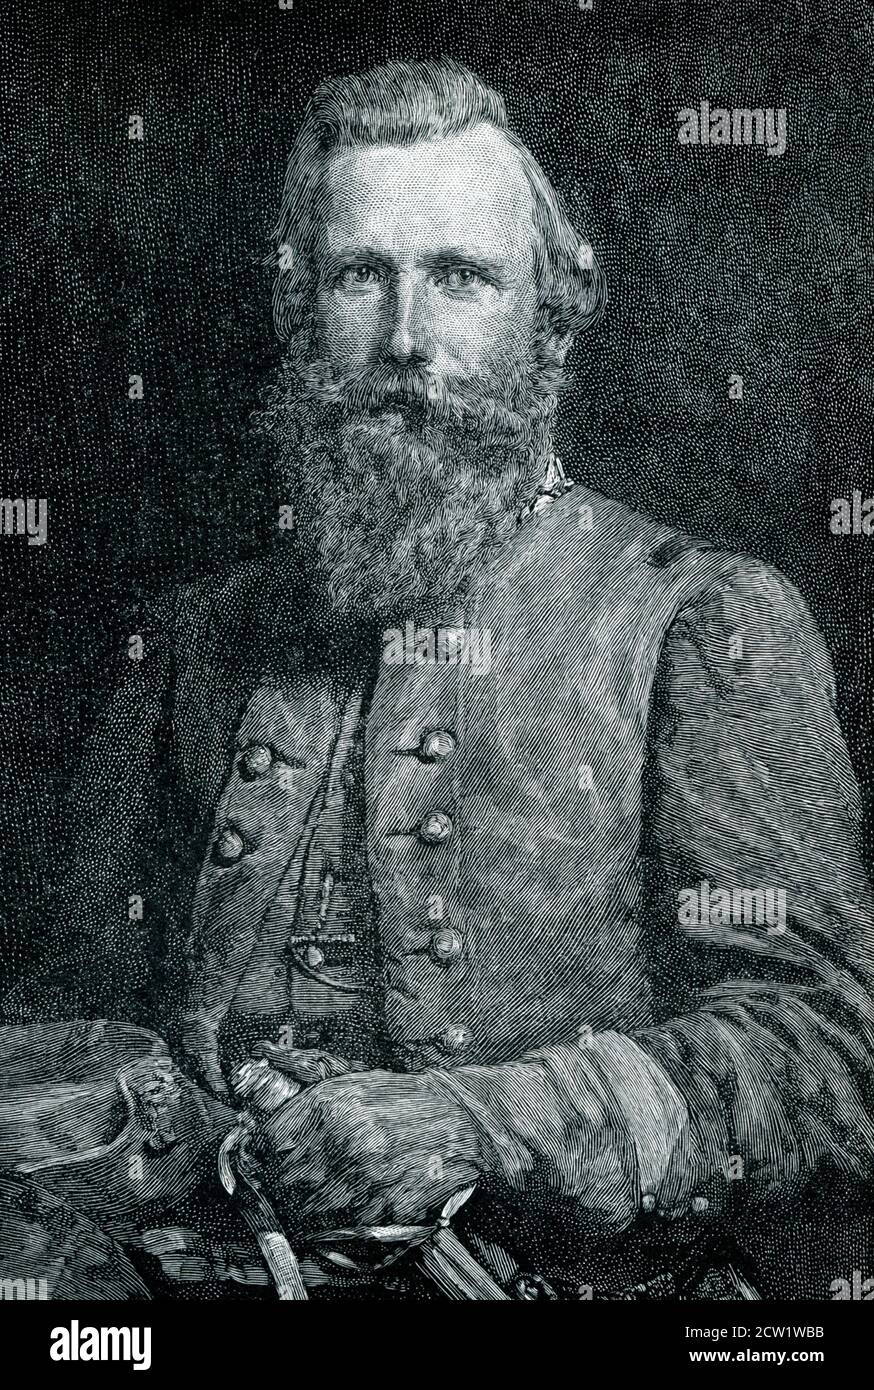 James Ewell Brown 'Jeb' Stuart (6 février 1833 – 12 mai 1864) était un officier de l'armée américaine de Virginie qui est devenu un général de l'armée des États confédérés pendant la guerre civile américaine. Il était connu à ses amis comme 'Jeb', d'après les initiales de ses prénoms. Banque D'Images